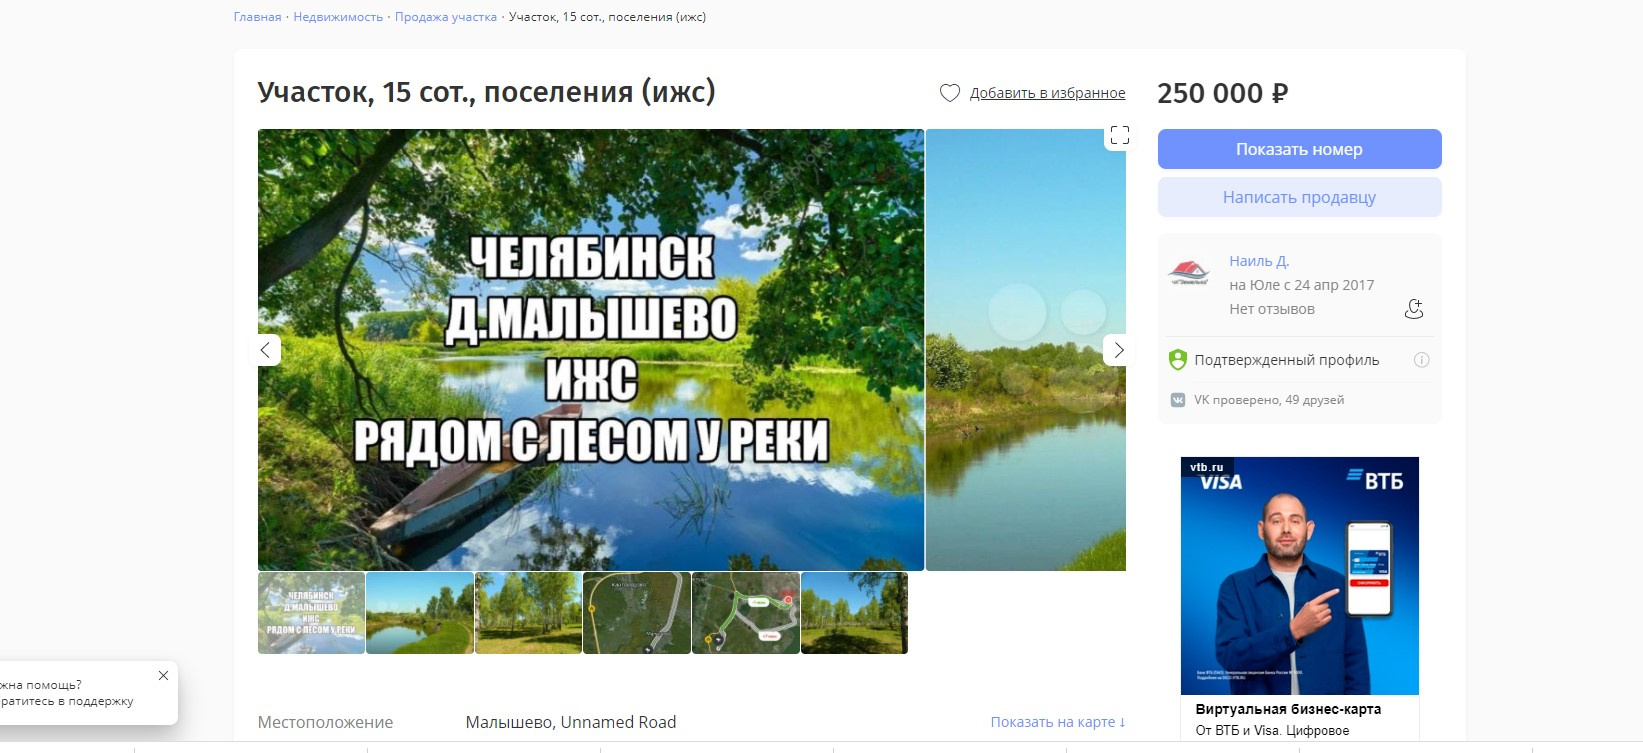 Объявления о продаже участков в Малышево легко найти в интернете